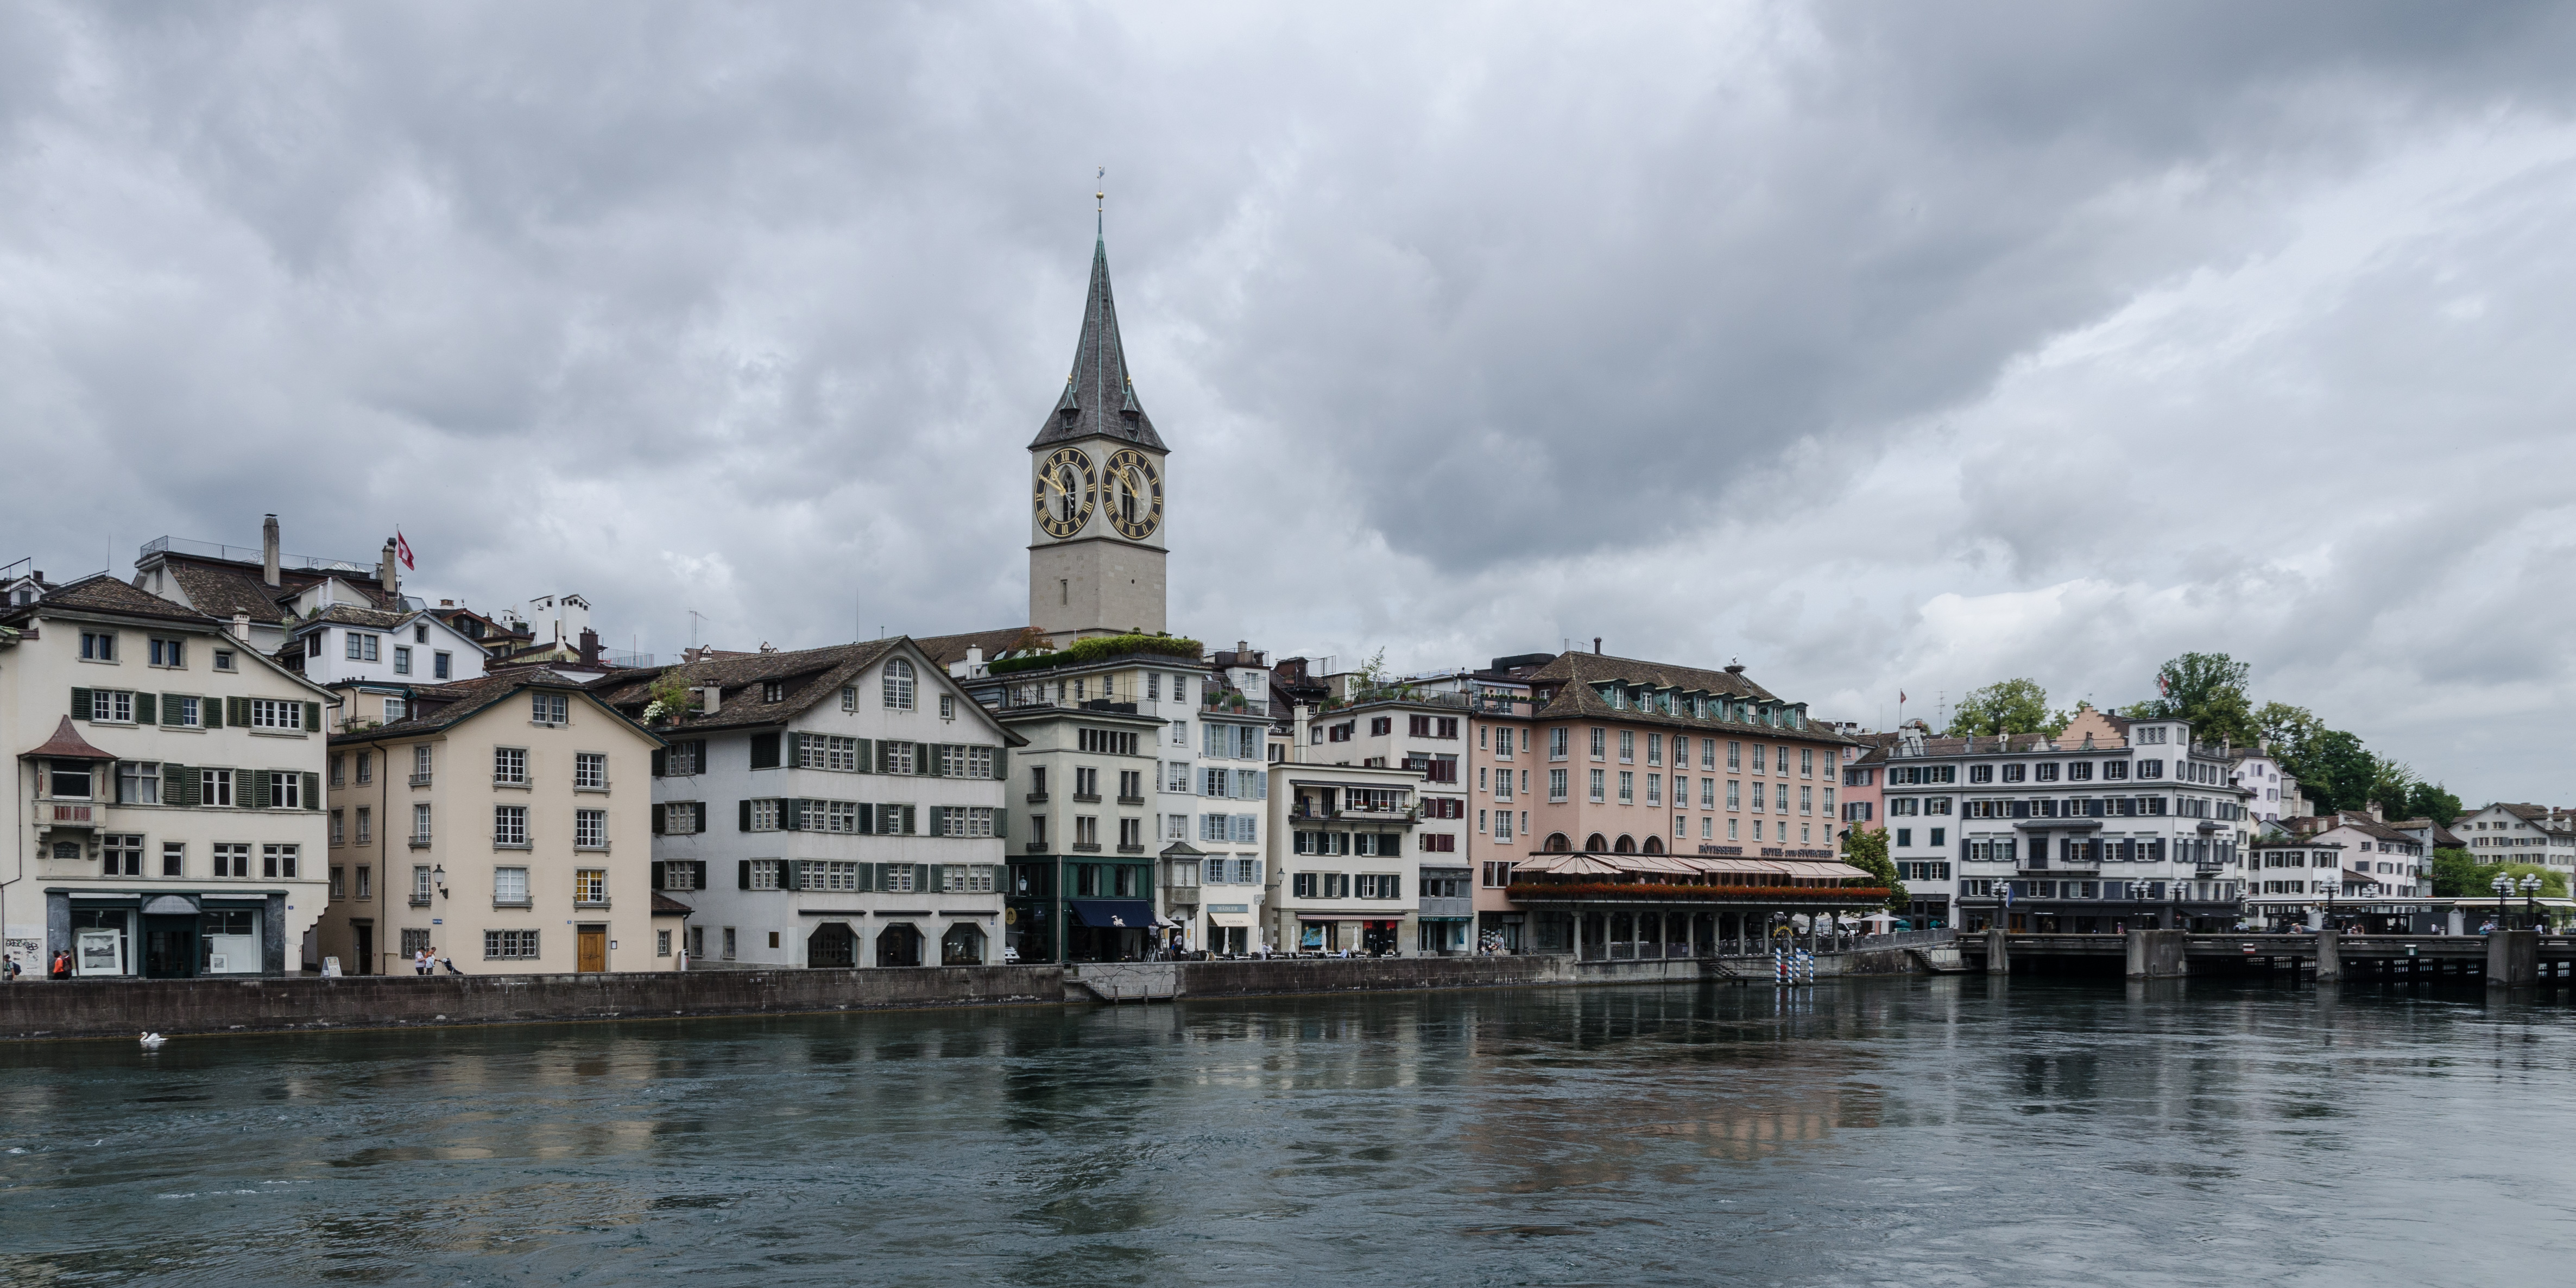 Stadthausquai and St. Peter, Zürich 20120626 1